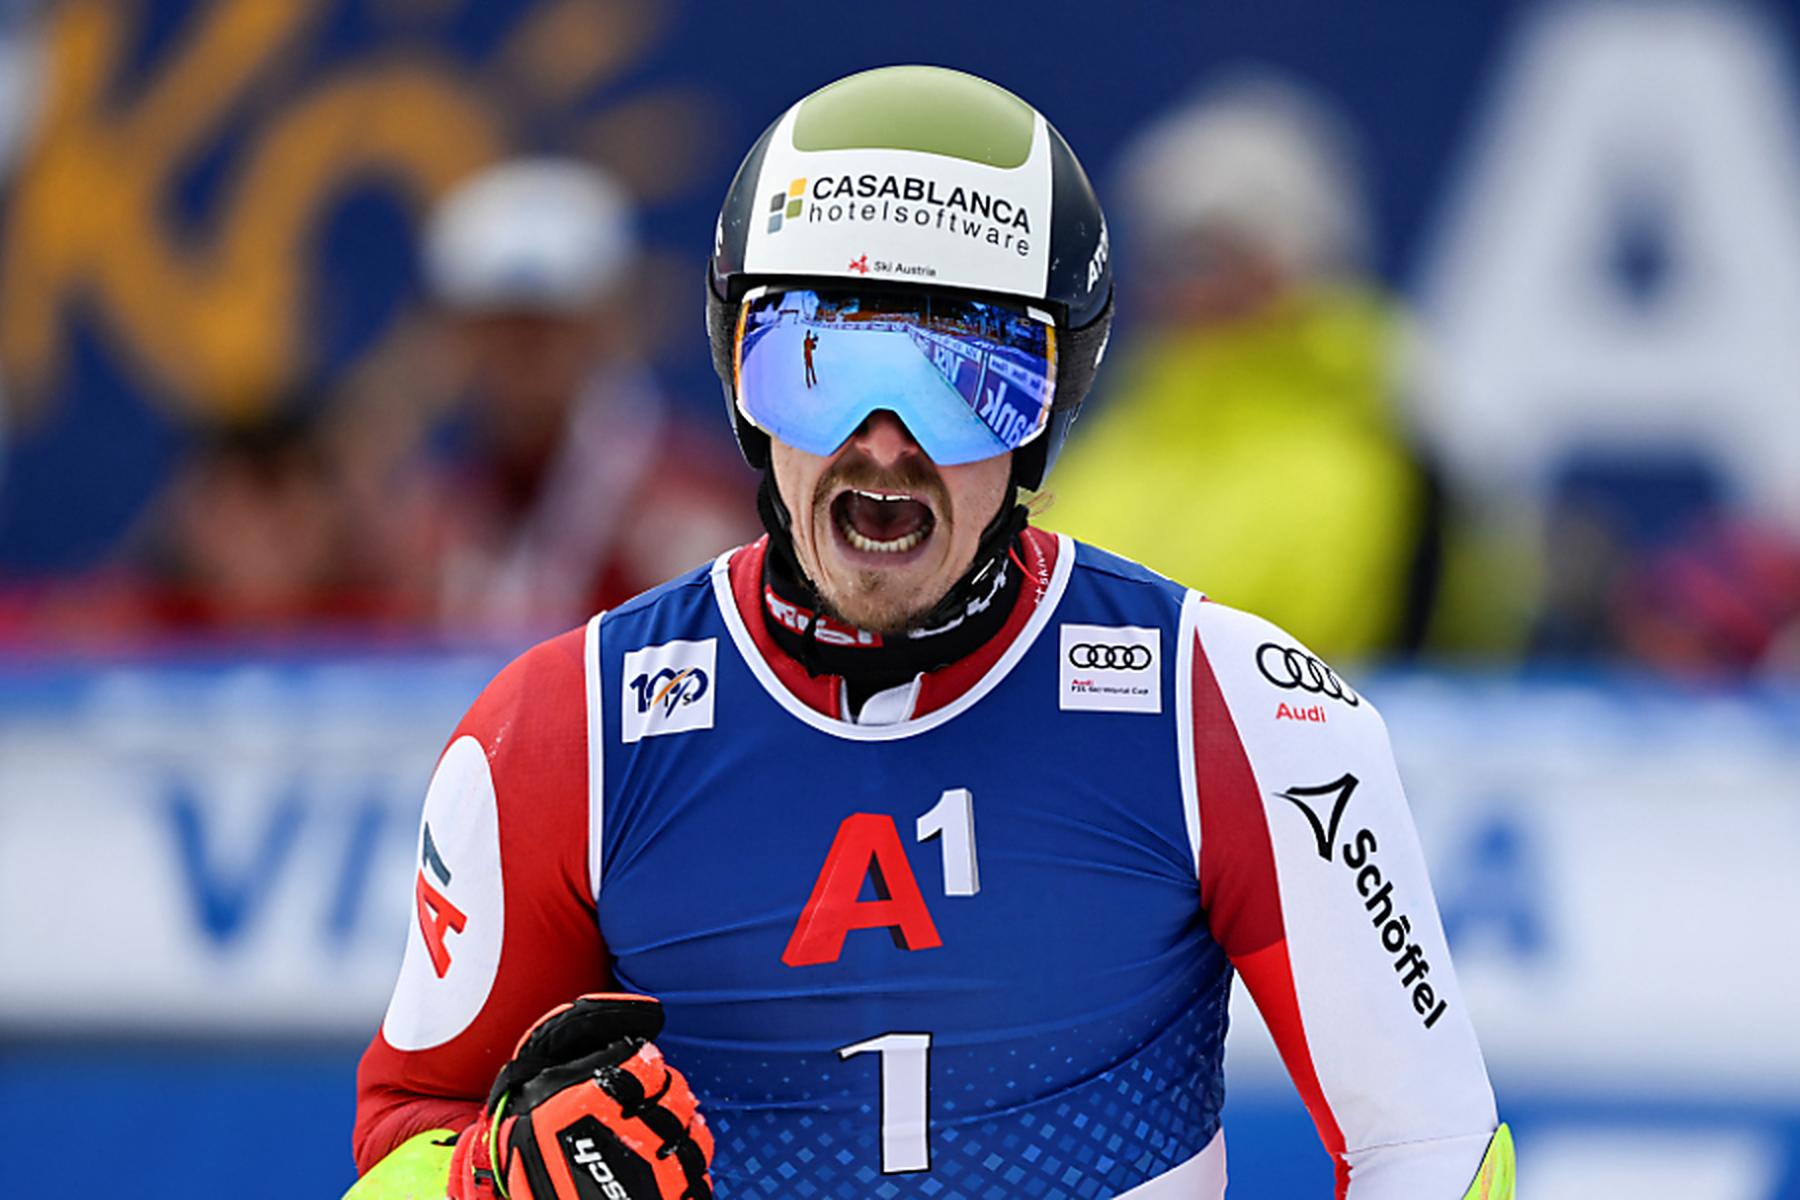 Bansko | Männer-Slalom in Bansko wegen widrigen Wetters abgesagt